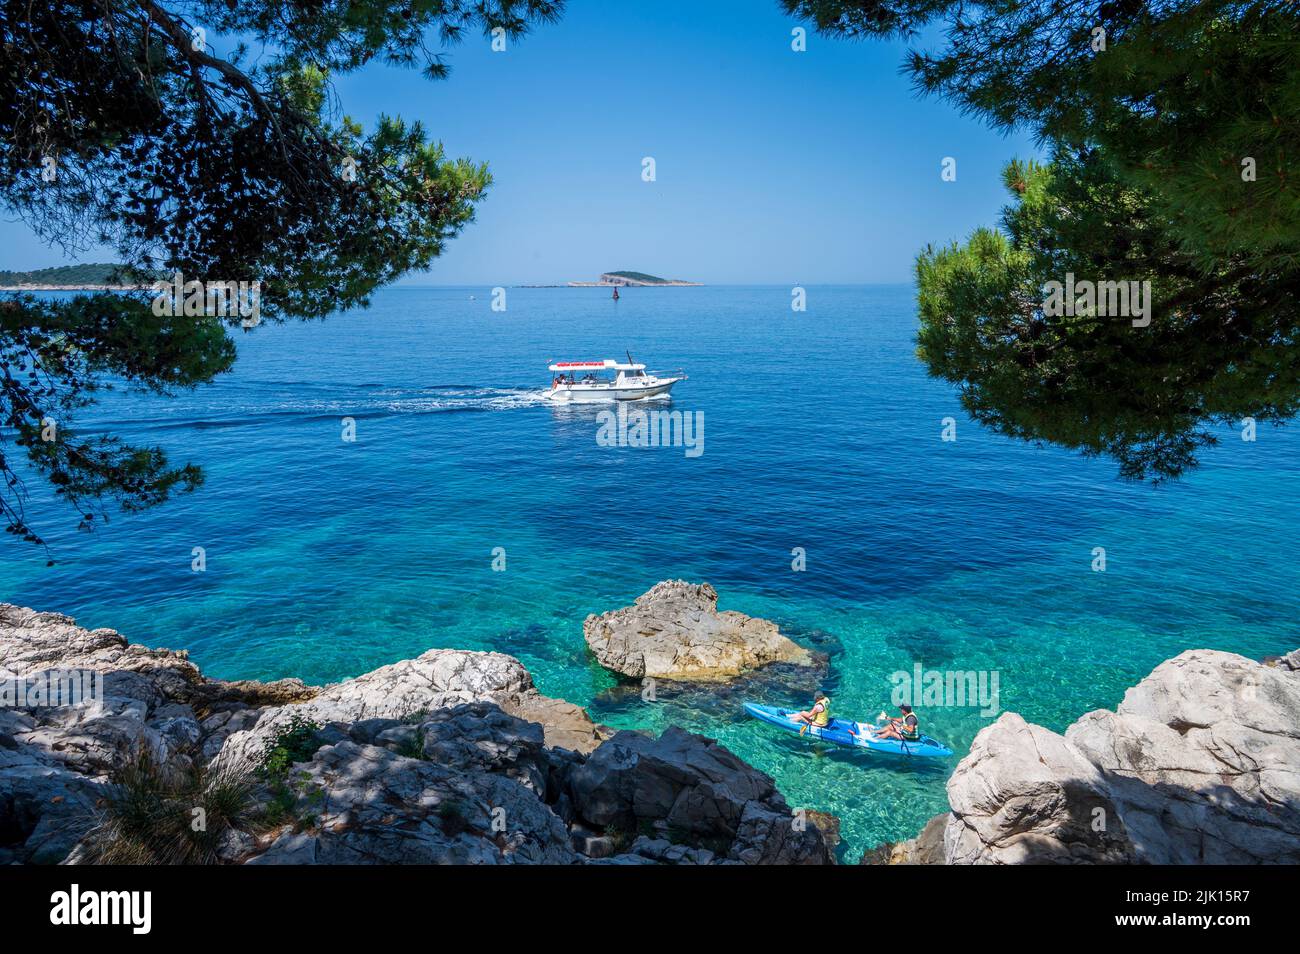 Bateau touristique sur la mer Adriatique, Cavtat, Riviera de Dubrovnik, Croatie, Europe Banque D'Images